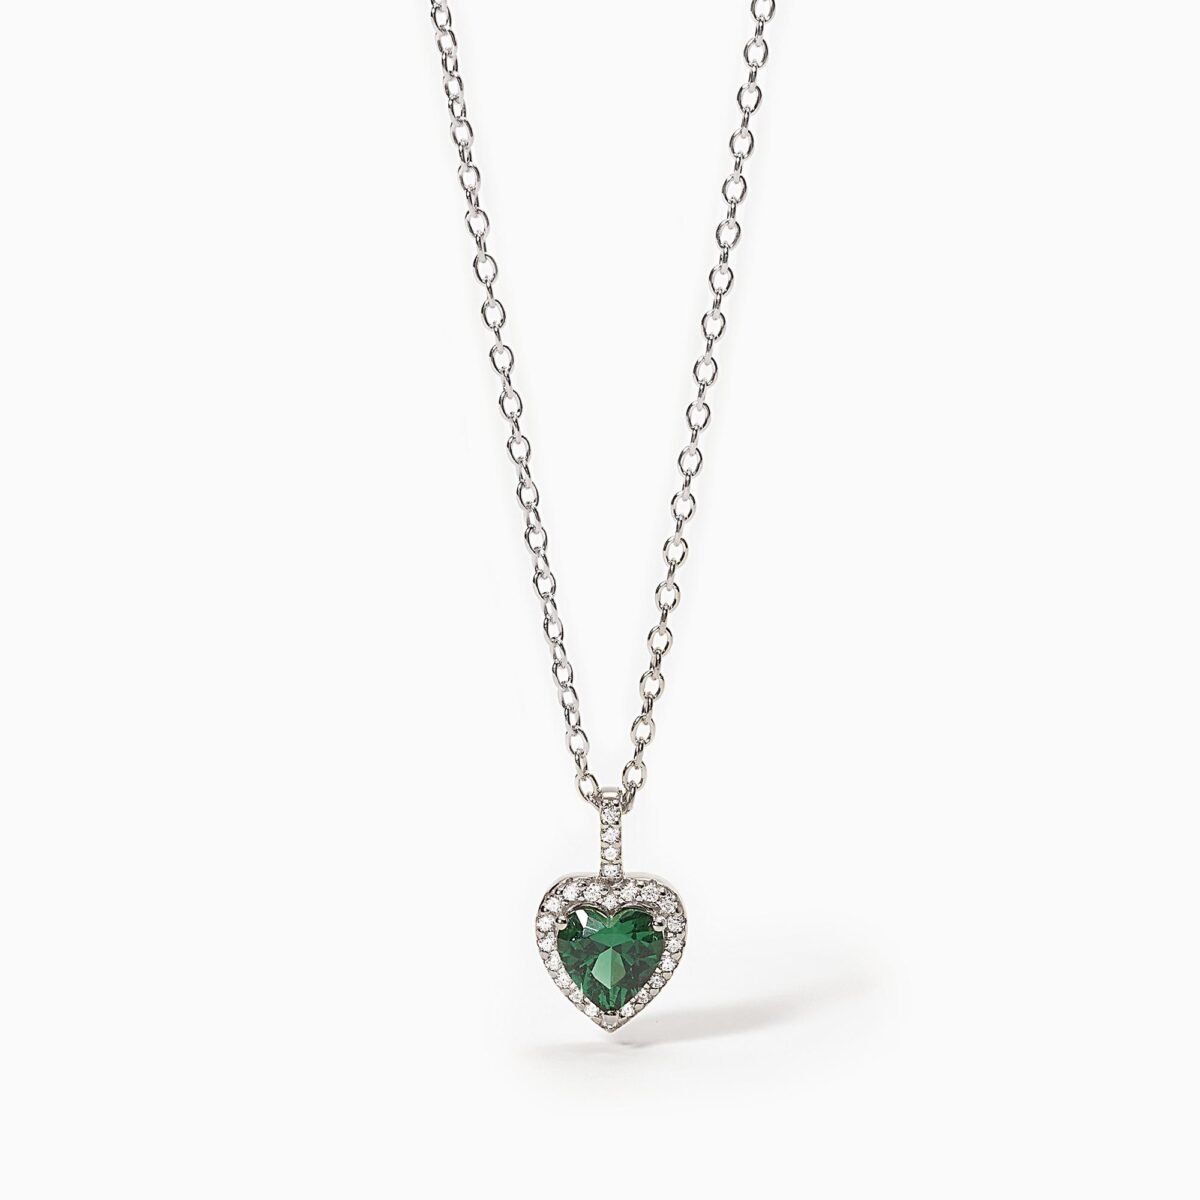 Collana con cuore in smeraldo sintetico mabina gioiello donna idea regalo 553600